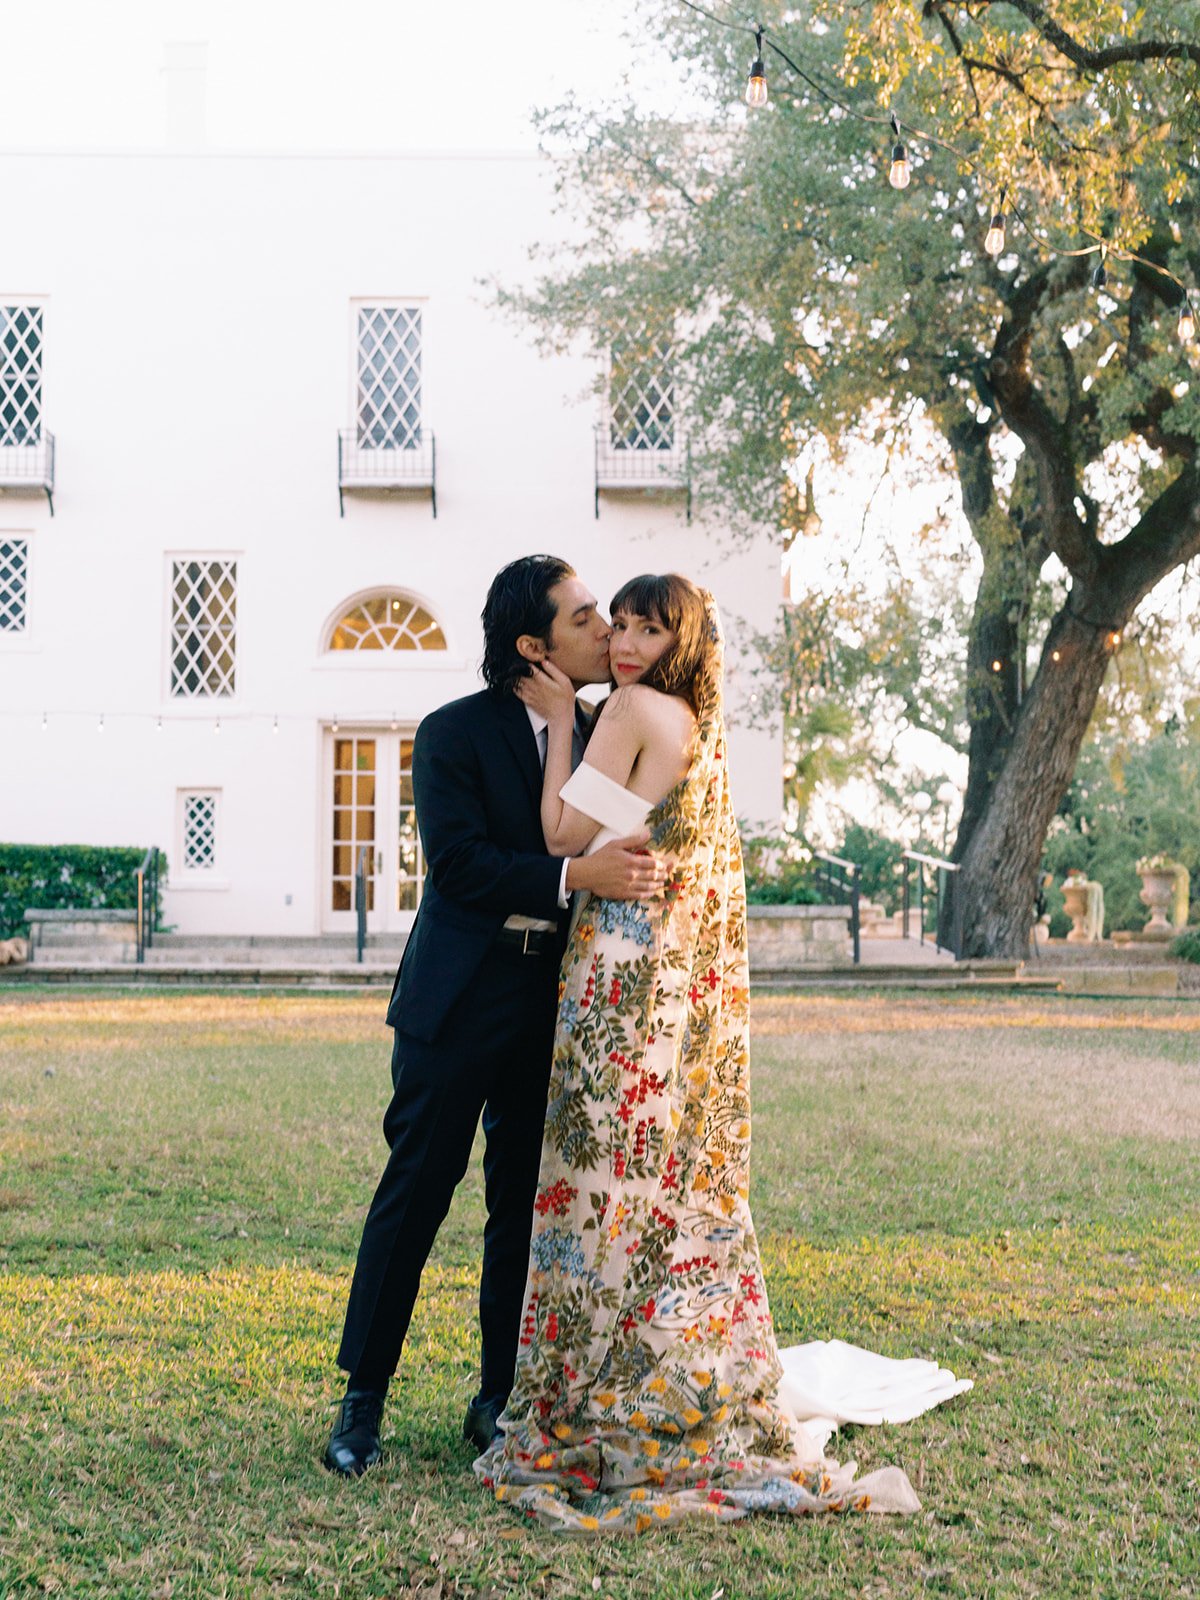 Best-Austin-Wedding-Photographers-Elopement-Film-35mm-Asheville-Santa-Barbara-Laguna-Gloria-49.jpg